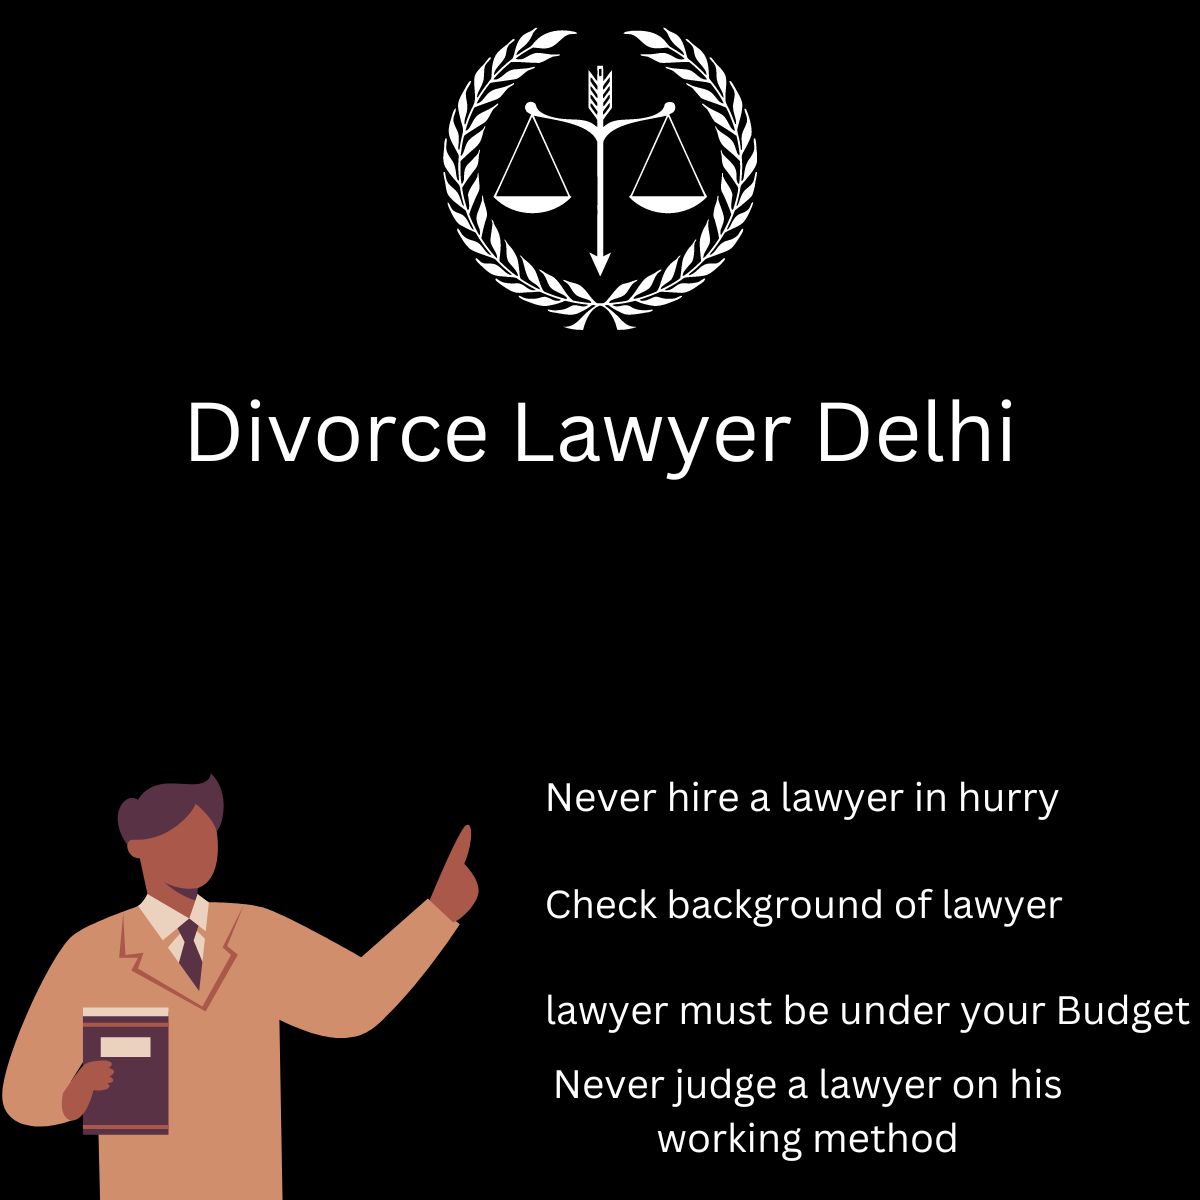 Divorce Lawyer Delhi - A divorce attorney